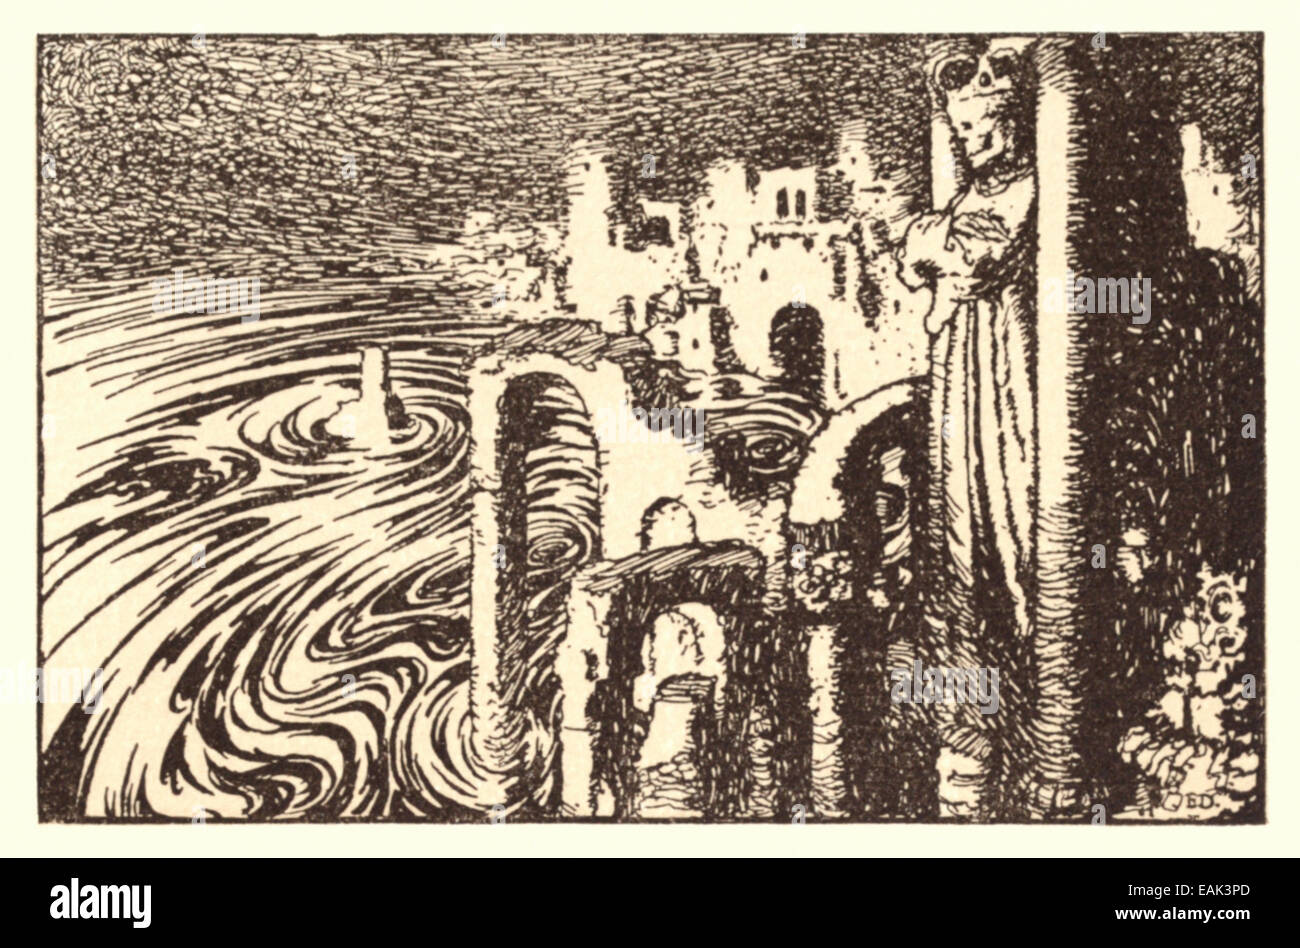 La ville dans la mer - Edmund Dulac illustration de 'Bells et autres poèmes". Voir la description pour plus d'informations Banque D'Images